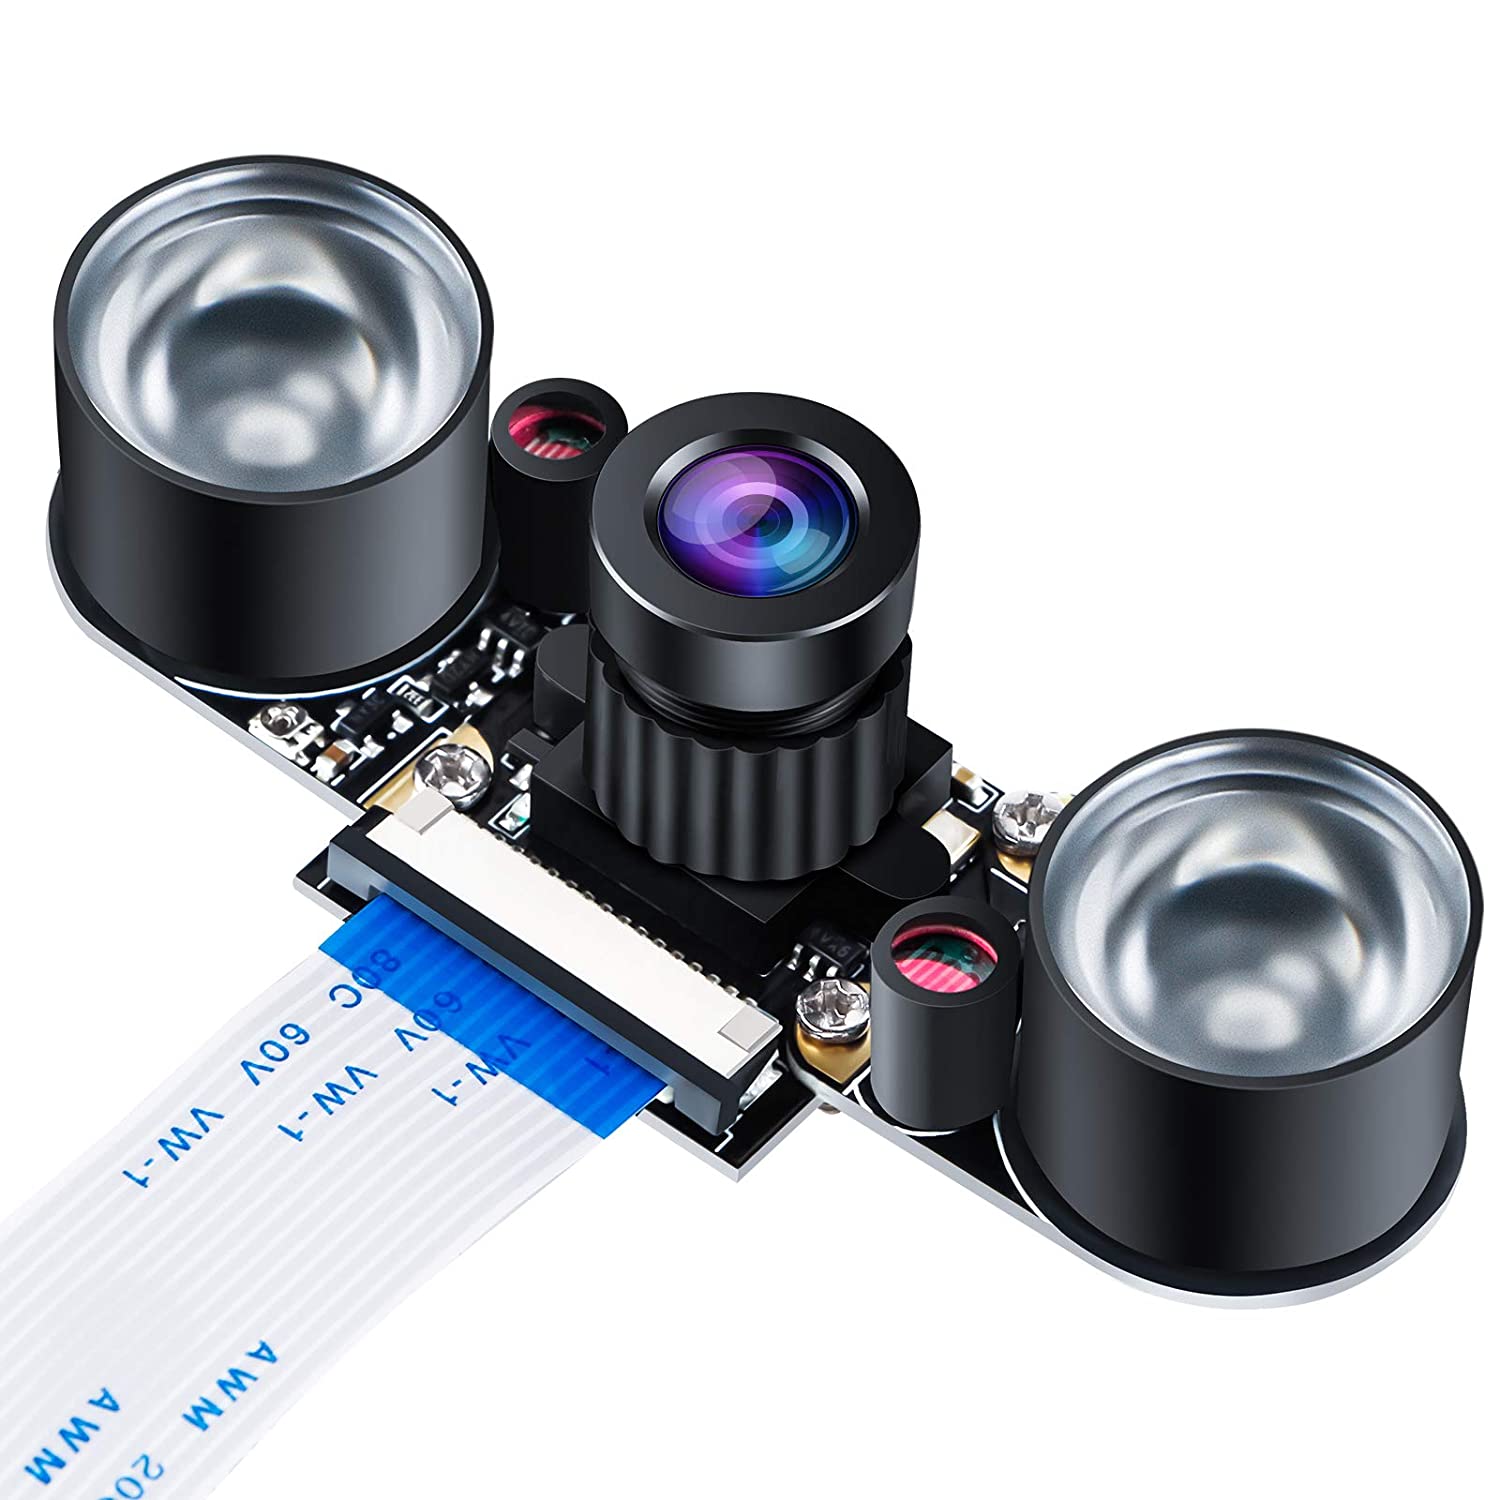 Raspberry Pi Kamera Nachtsicht Infrarot Kameramodul 5MP OV5647 Webcam Einstellbare Kamera Video 1080p für Raspberry Pi Modell 2B 2B + 3B 3B + 4B - AZ-Delivery